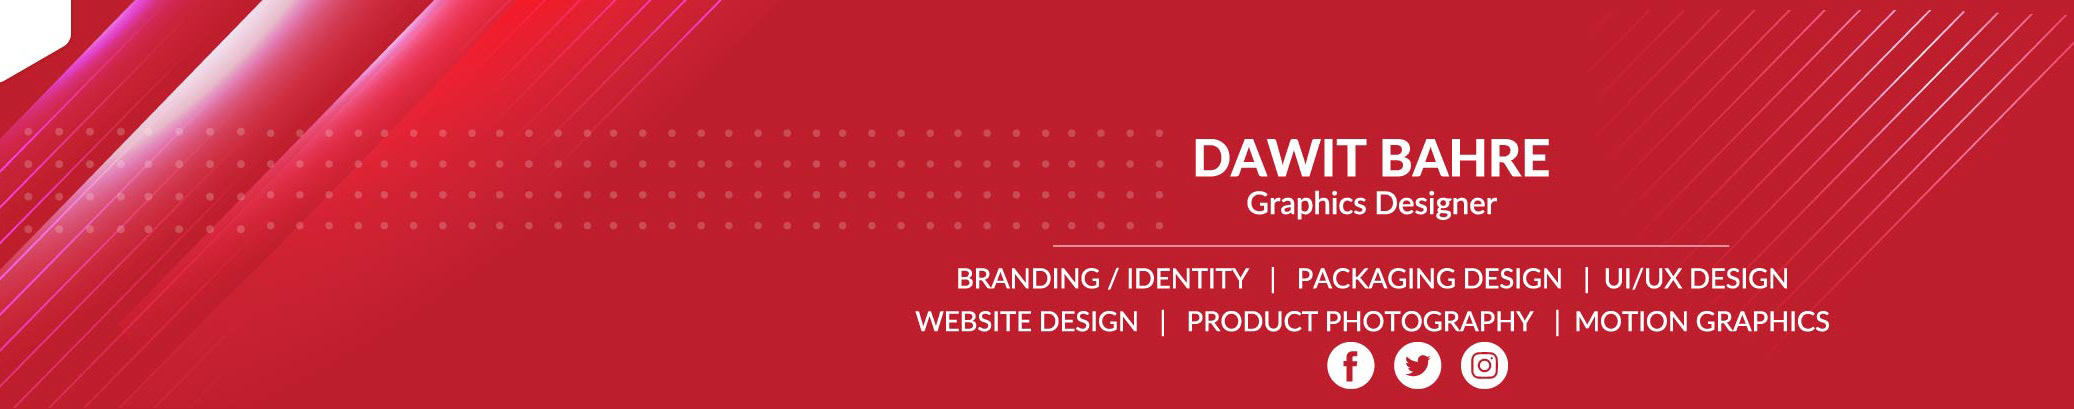 Bannière de profil de Dawit Bahre